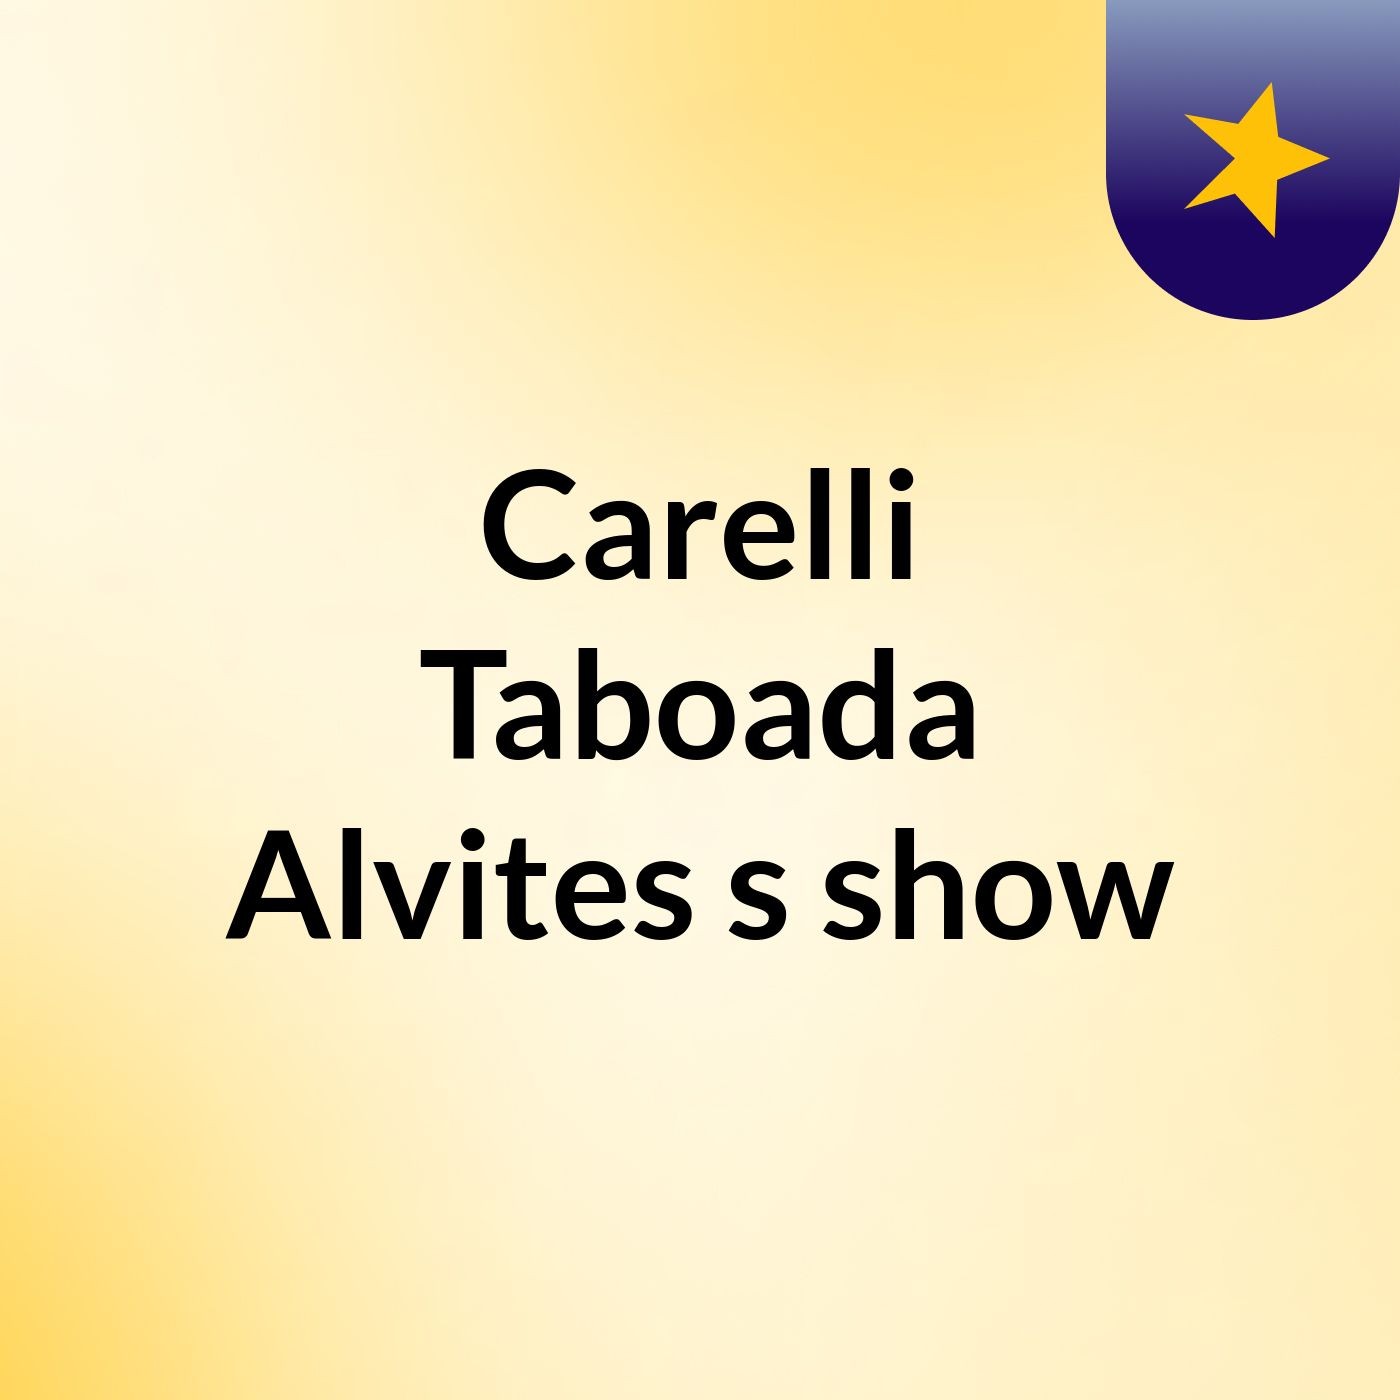 Carelli Taboada Alvites's show